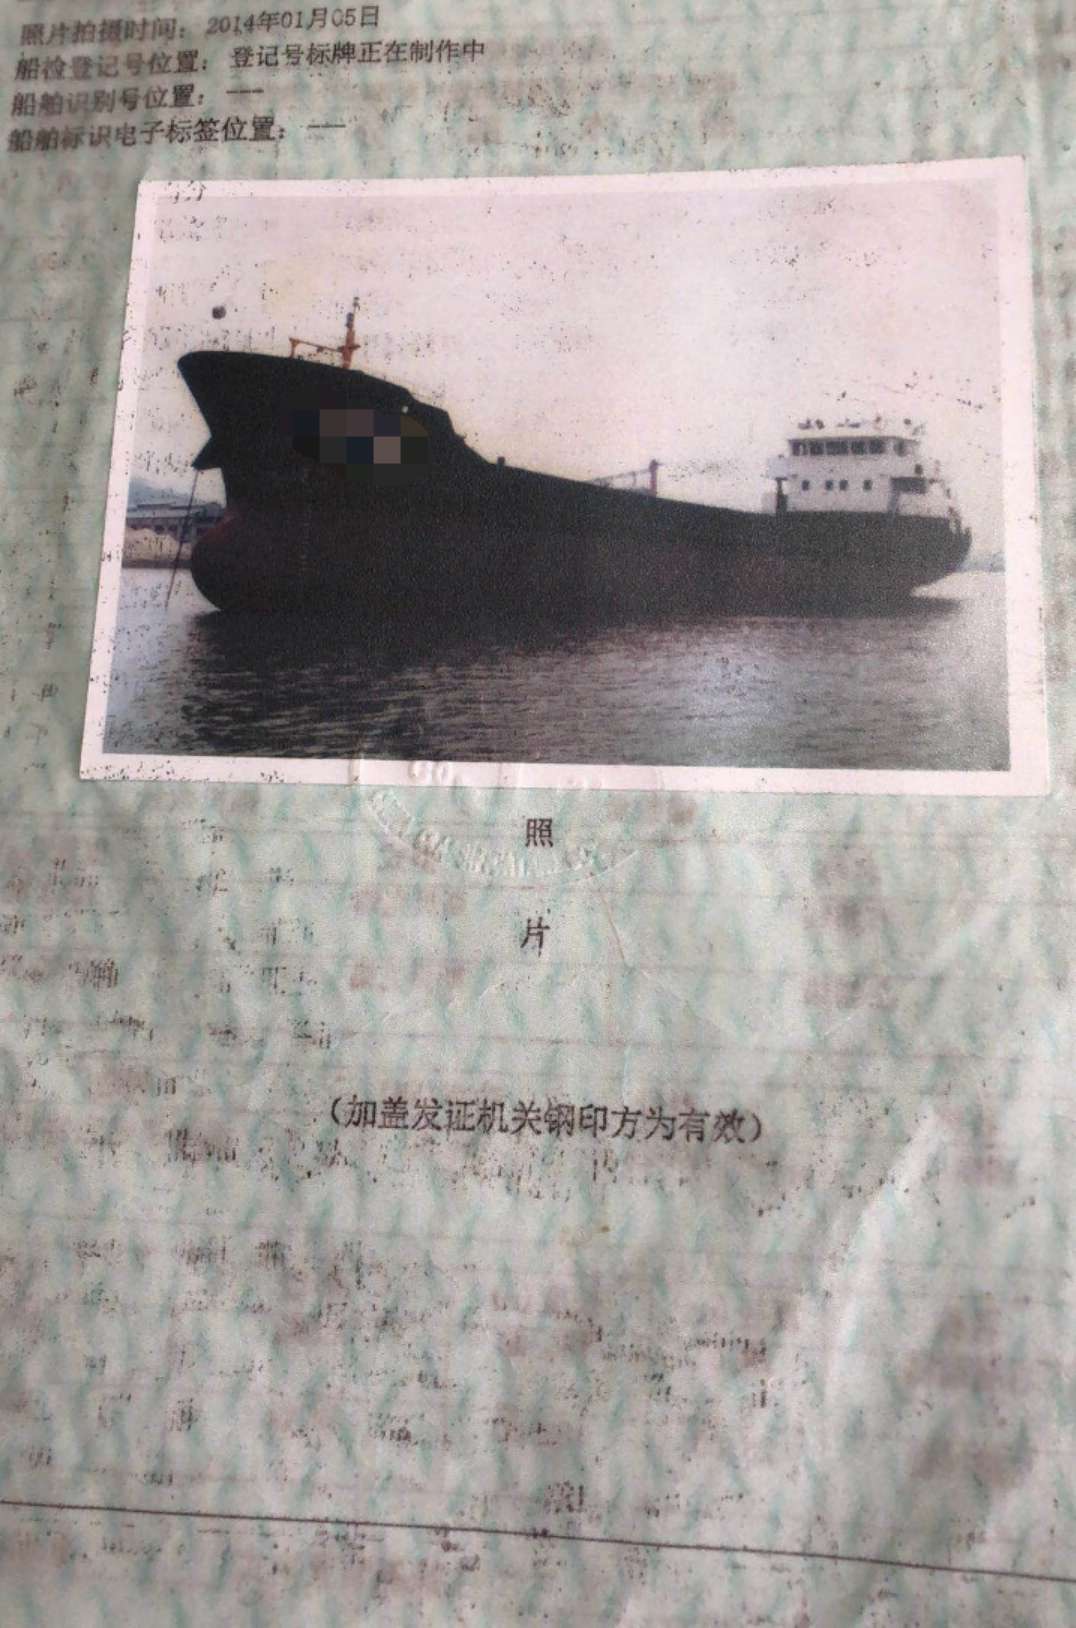 1000吨货船